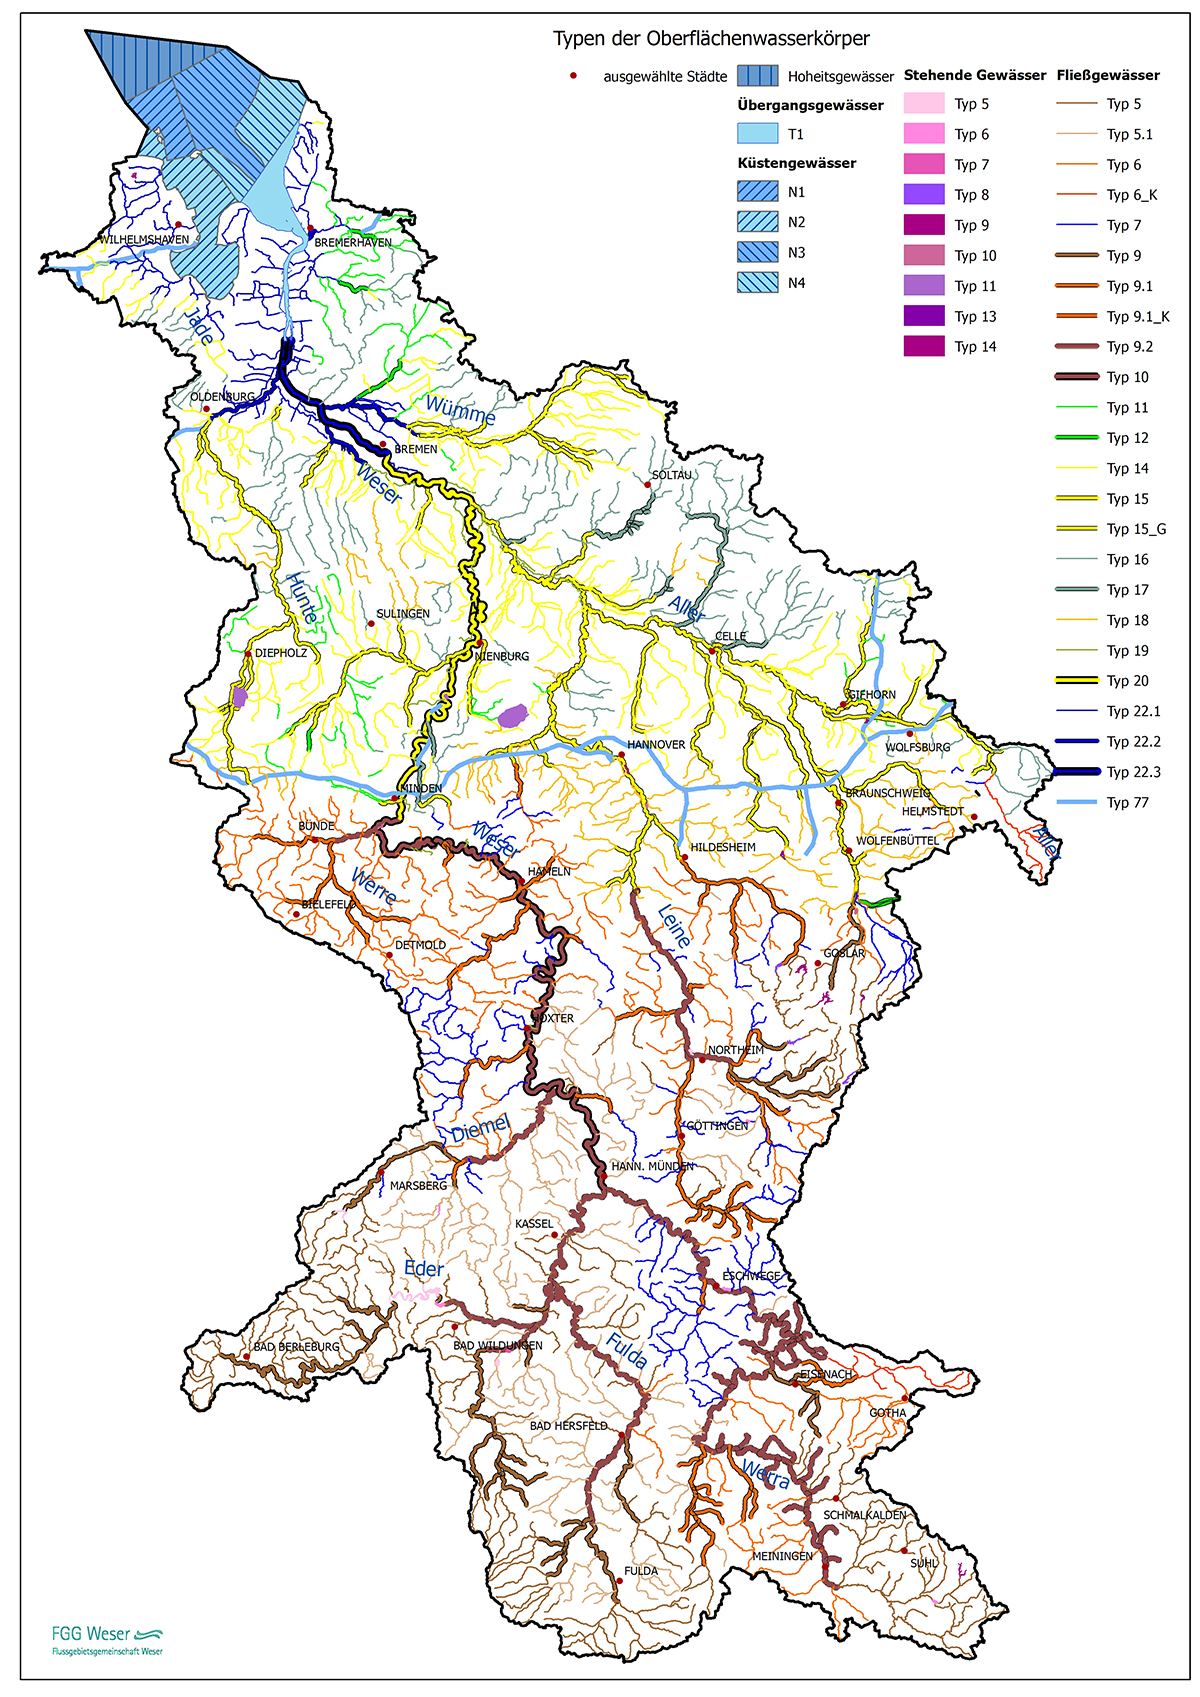 Ökoregionen und Typen der Oberflächengewässer (FGG Weser, 2021)